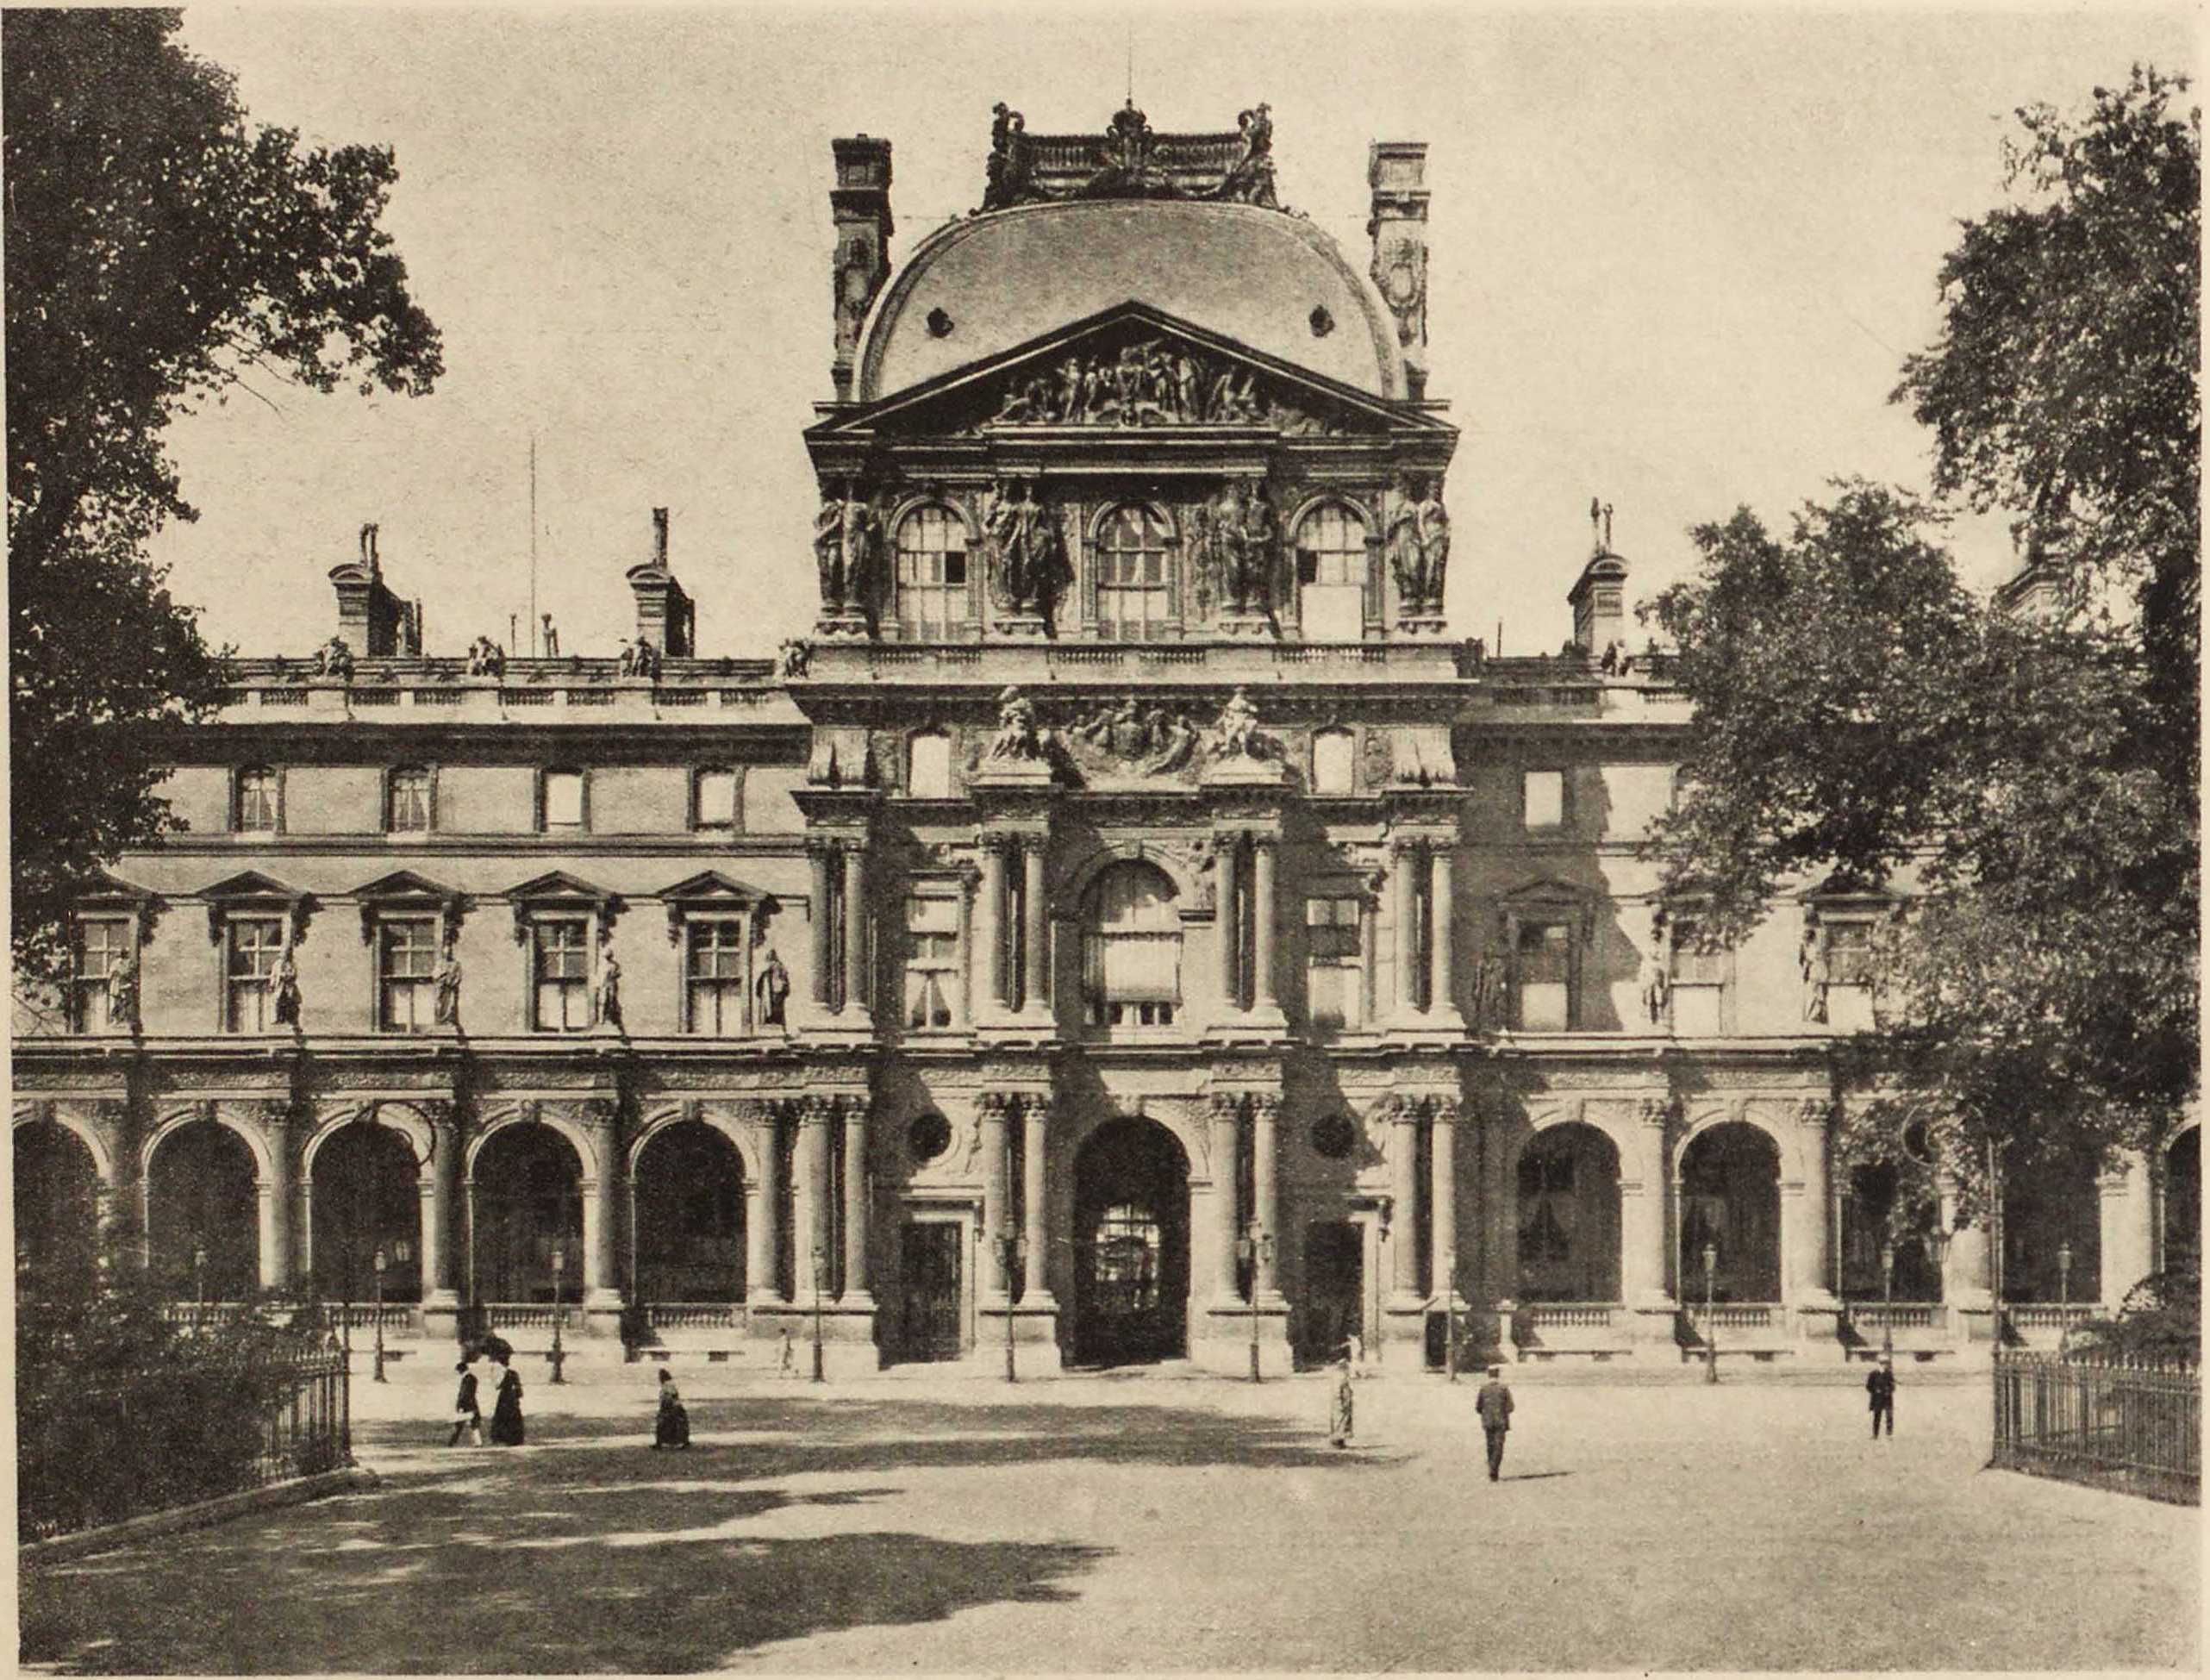 49. Лувр. Павильон Ришелье. Le Louvre. Pavillon Richelieu